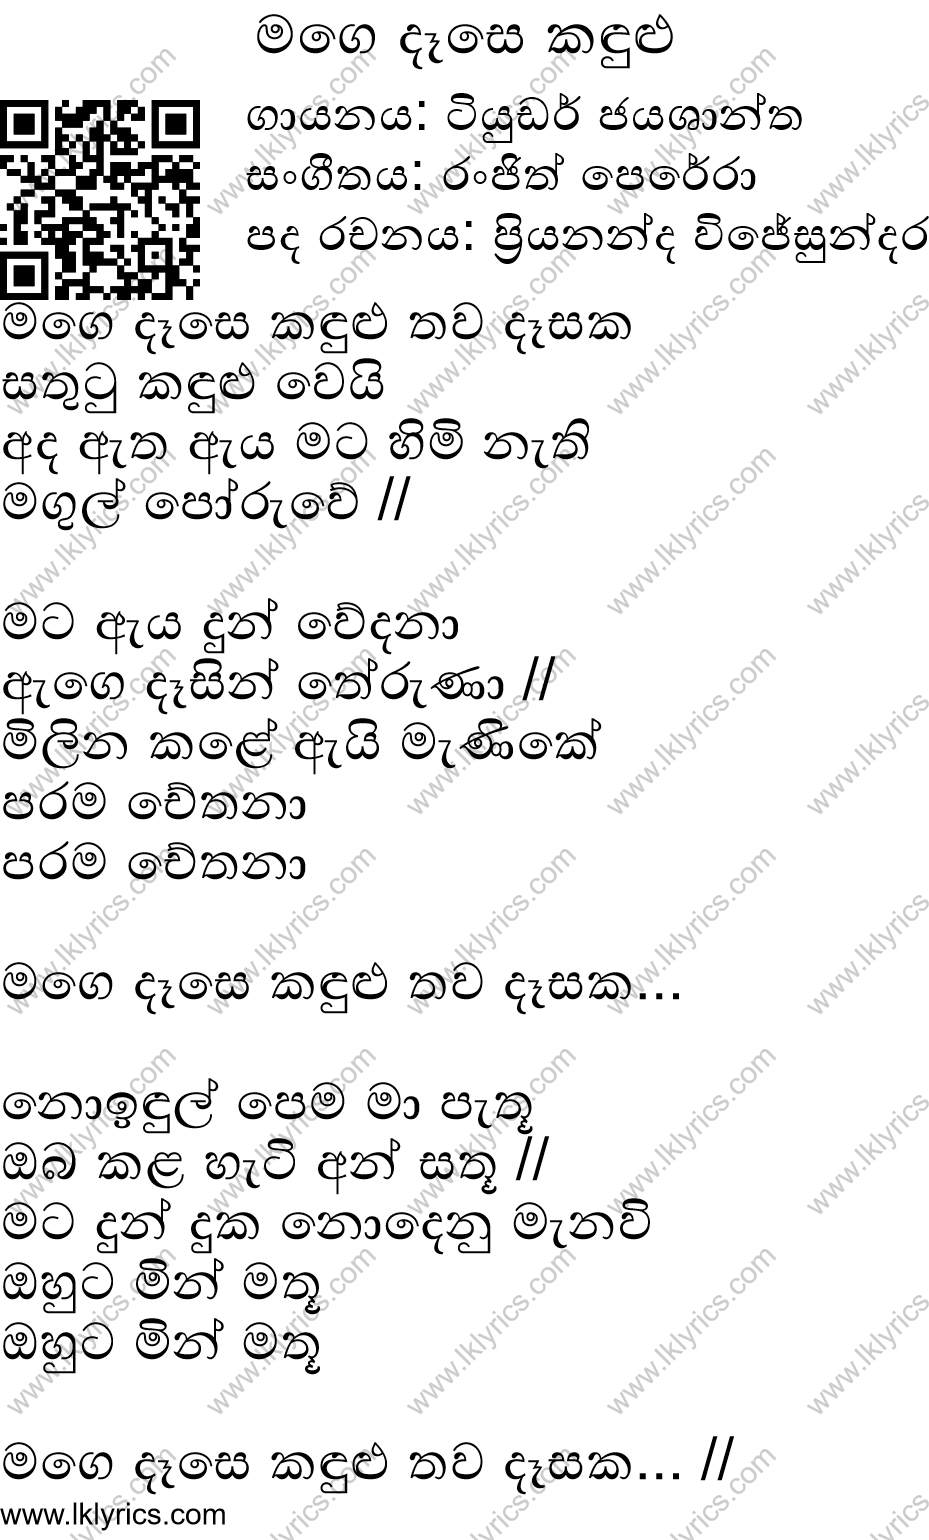 Mage Dase Kandulu Lyrics